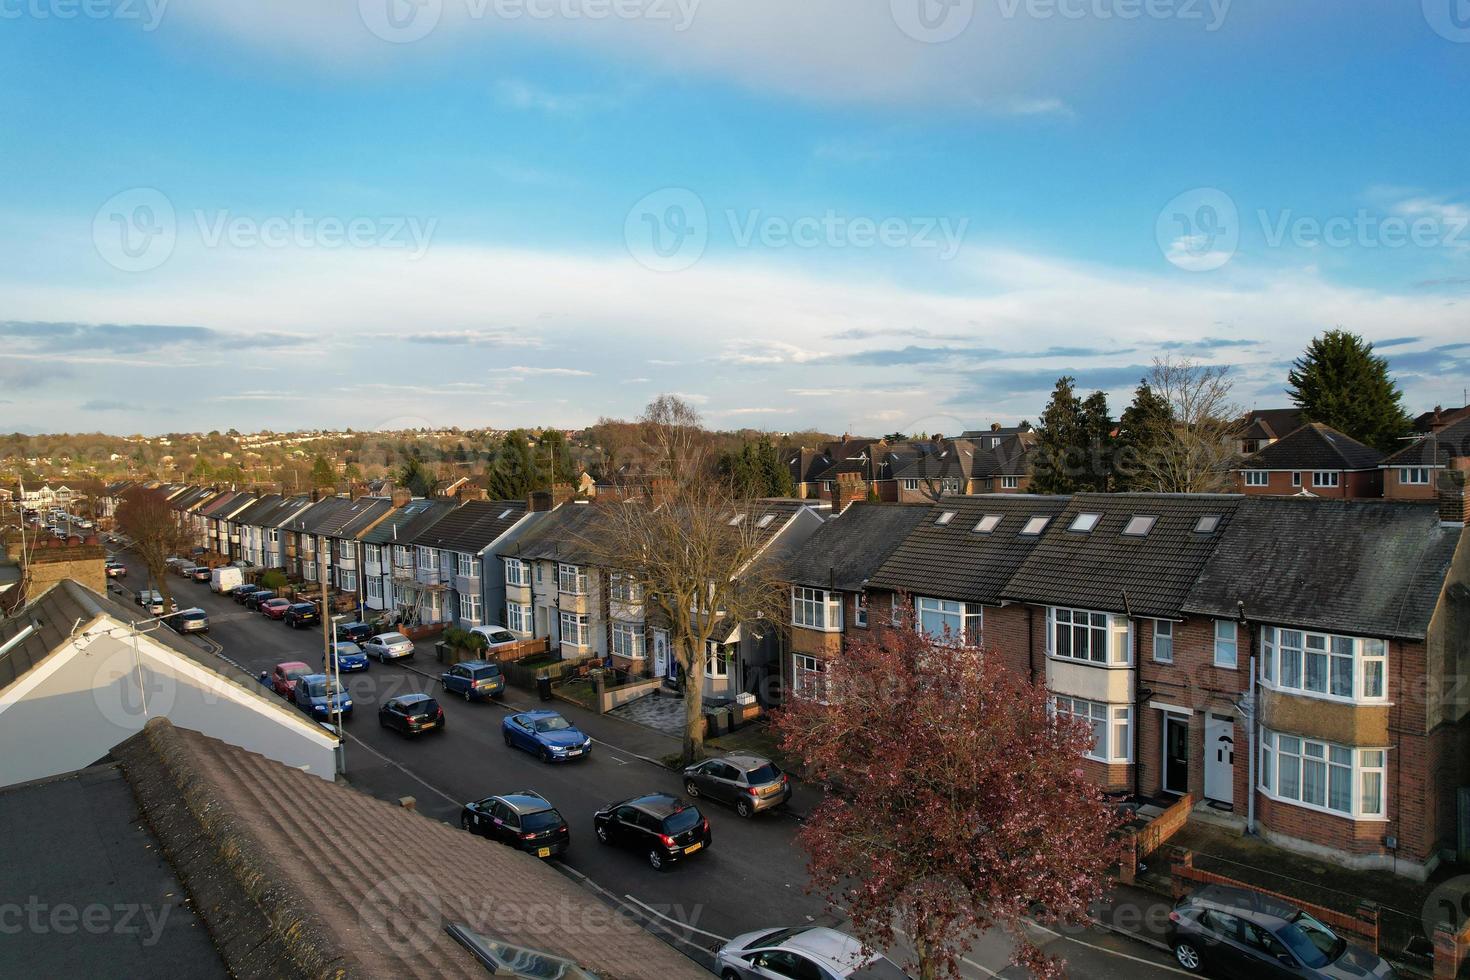 aérien vue de luton Résidentiel district de Saint augustine ave luton Angleterre Angleterre génial grande-bretagne. le image a été capturé sur 06-avril-2023 avec drone caméra pendant le coucher du soleil photo